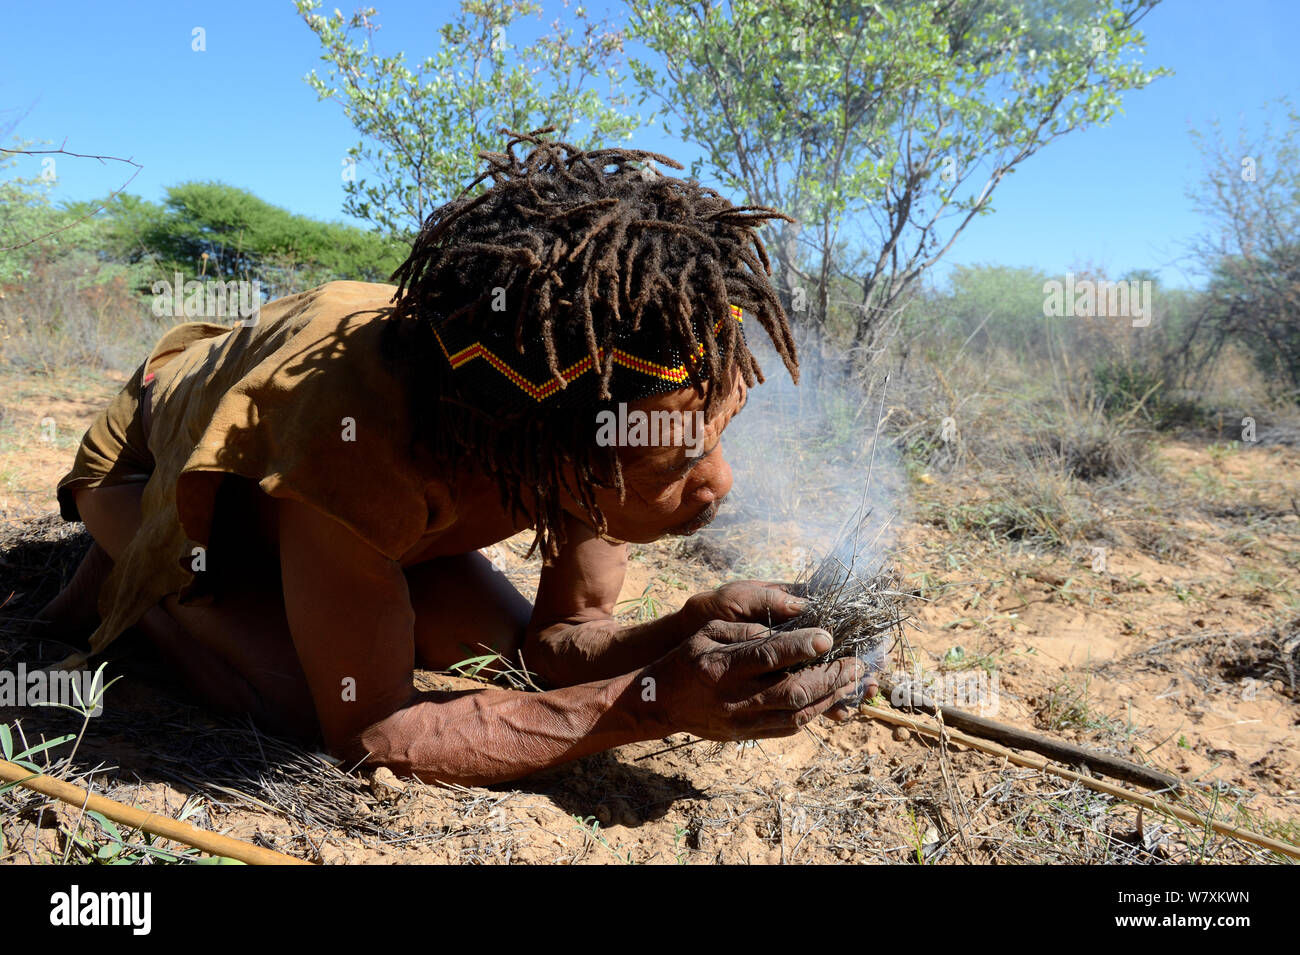 Naro San Buschmänner Feuer machen in traditioneller Weise, Kalahari, Ghanzi region, Botswana, Afrika. Trockene Jahreszeit, Oktober 2014. Stockfoto